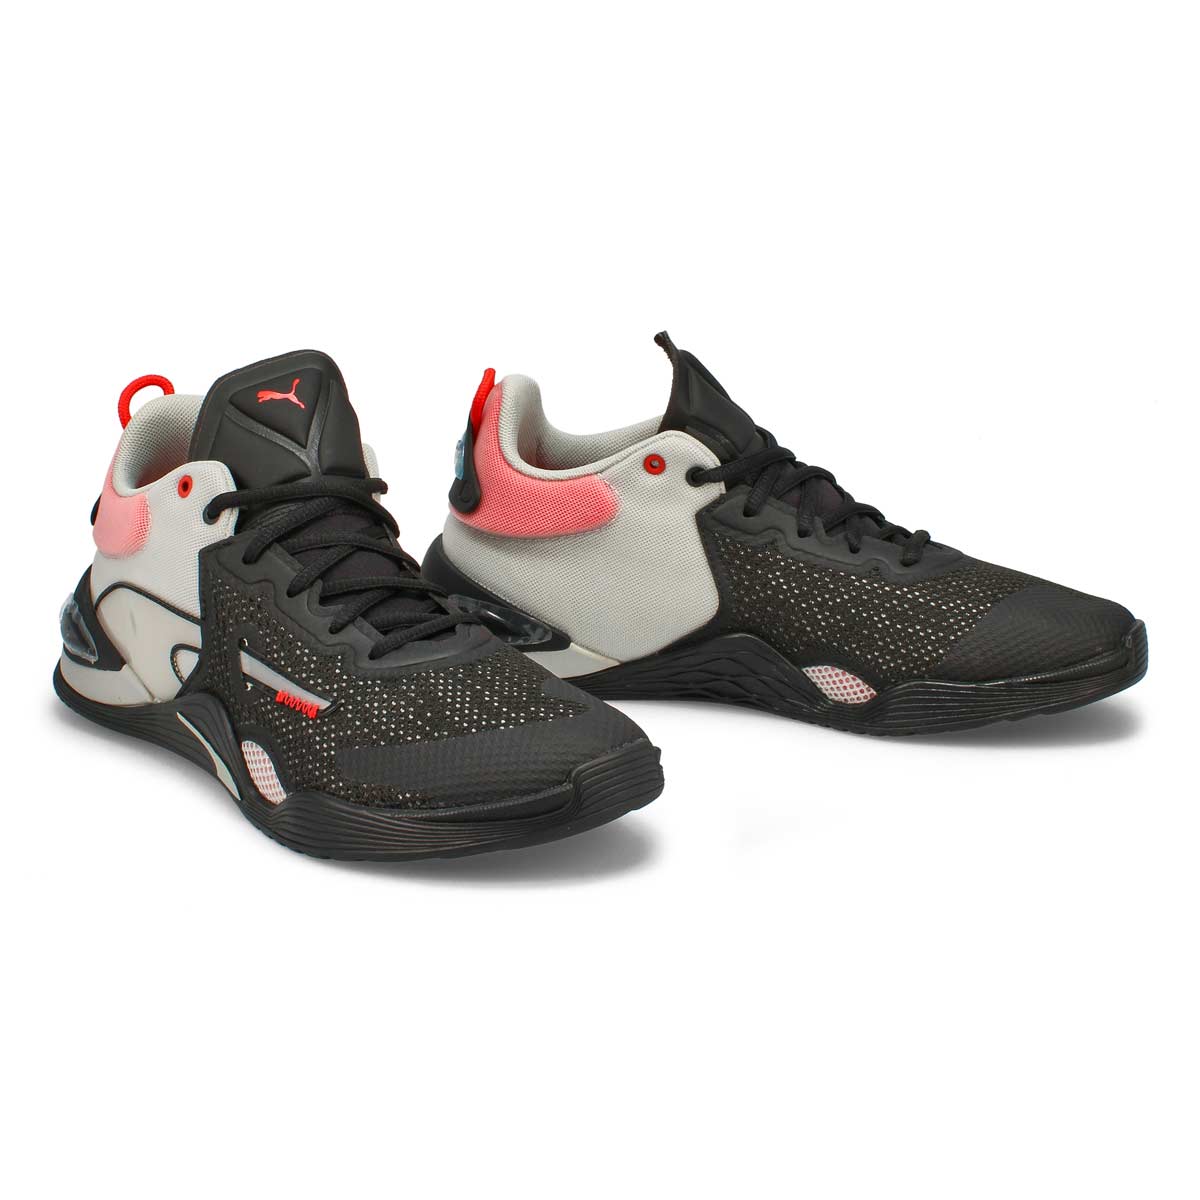 Men's Fuse Sneaker - Black/ Poppy Red /Grey